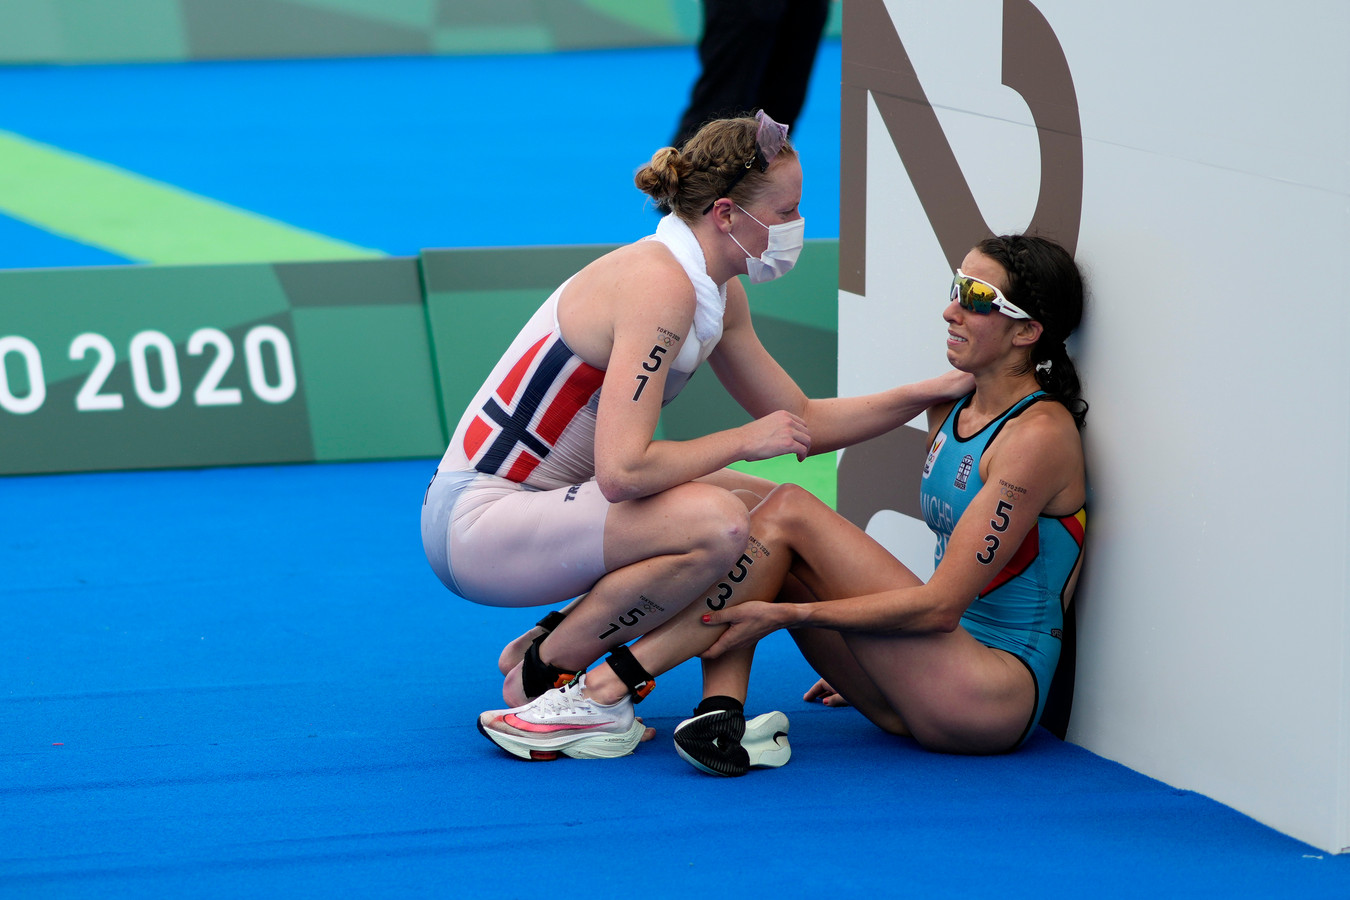 De Belgische Claire Michel wordt geassisteerd door de Noorse Lotte Miller na de triathlon.